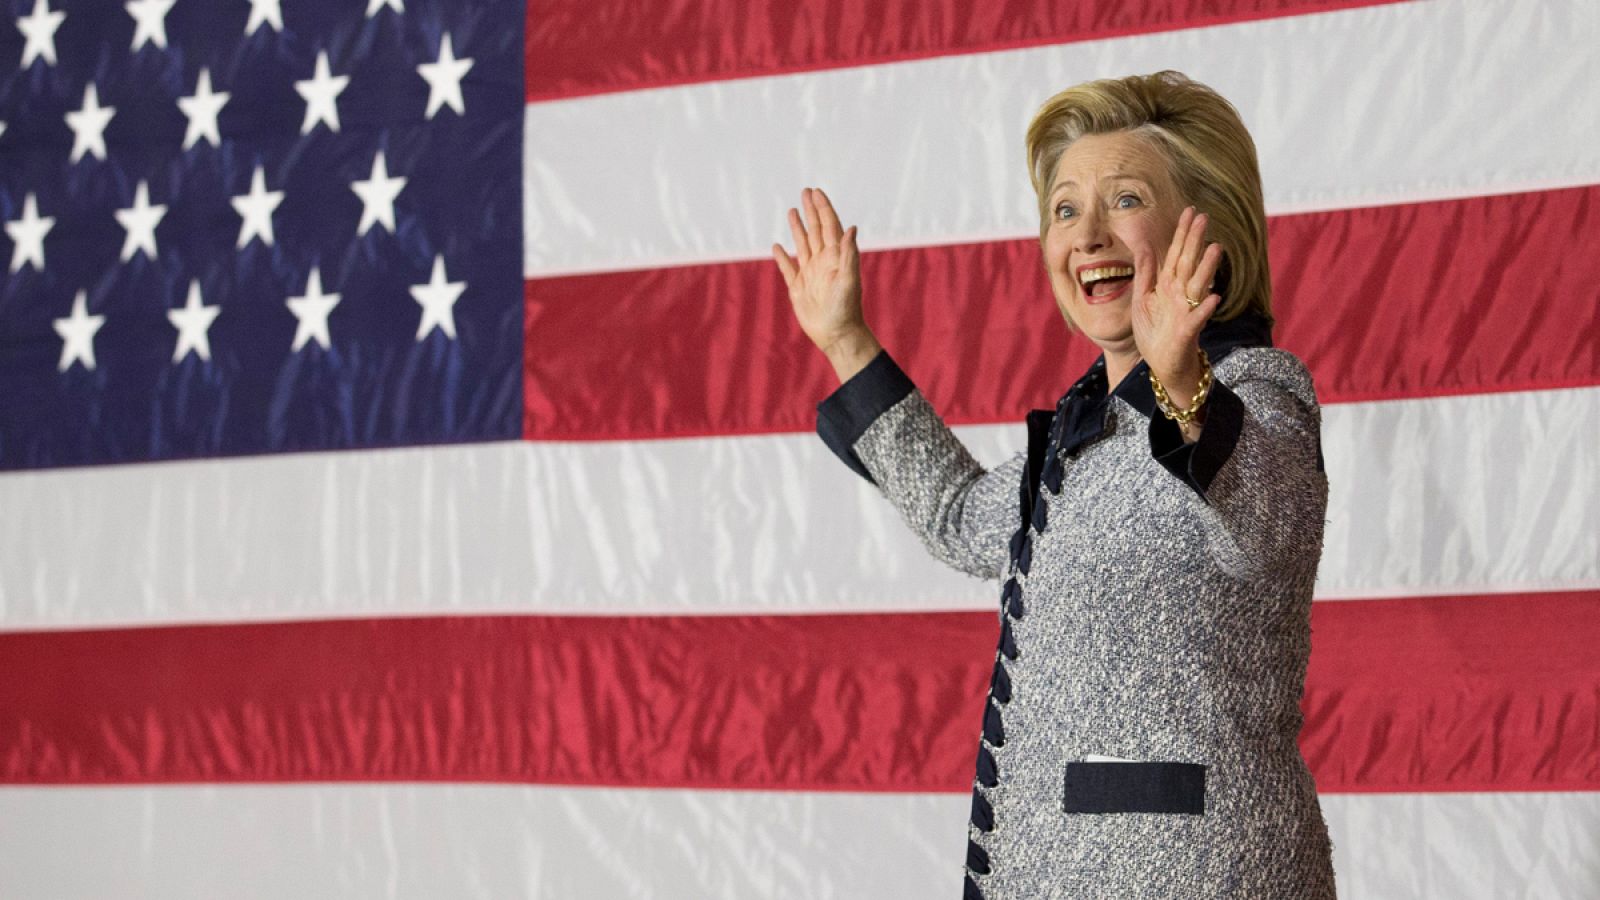 La candidata presidencial demócrata Hillary Clinton saluda a sus seguidores durante un acto electoral celebrado en Pittsburgh, Pennsylvania, este martes 14 de junio.